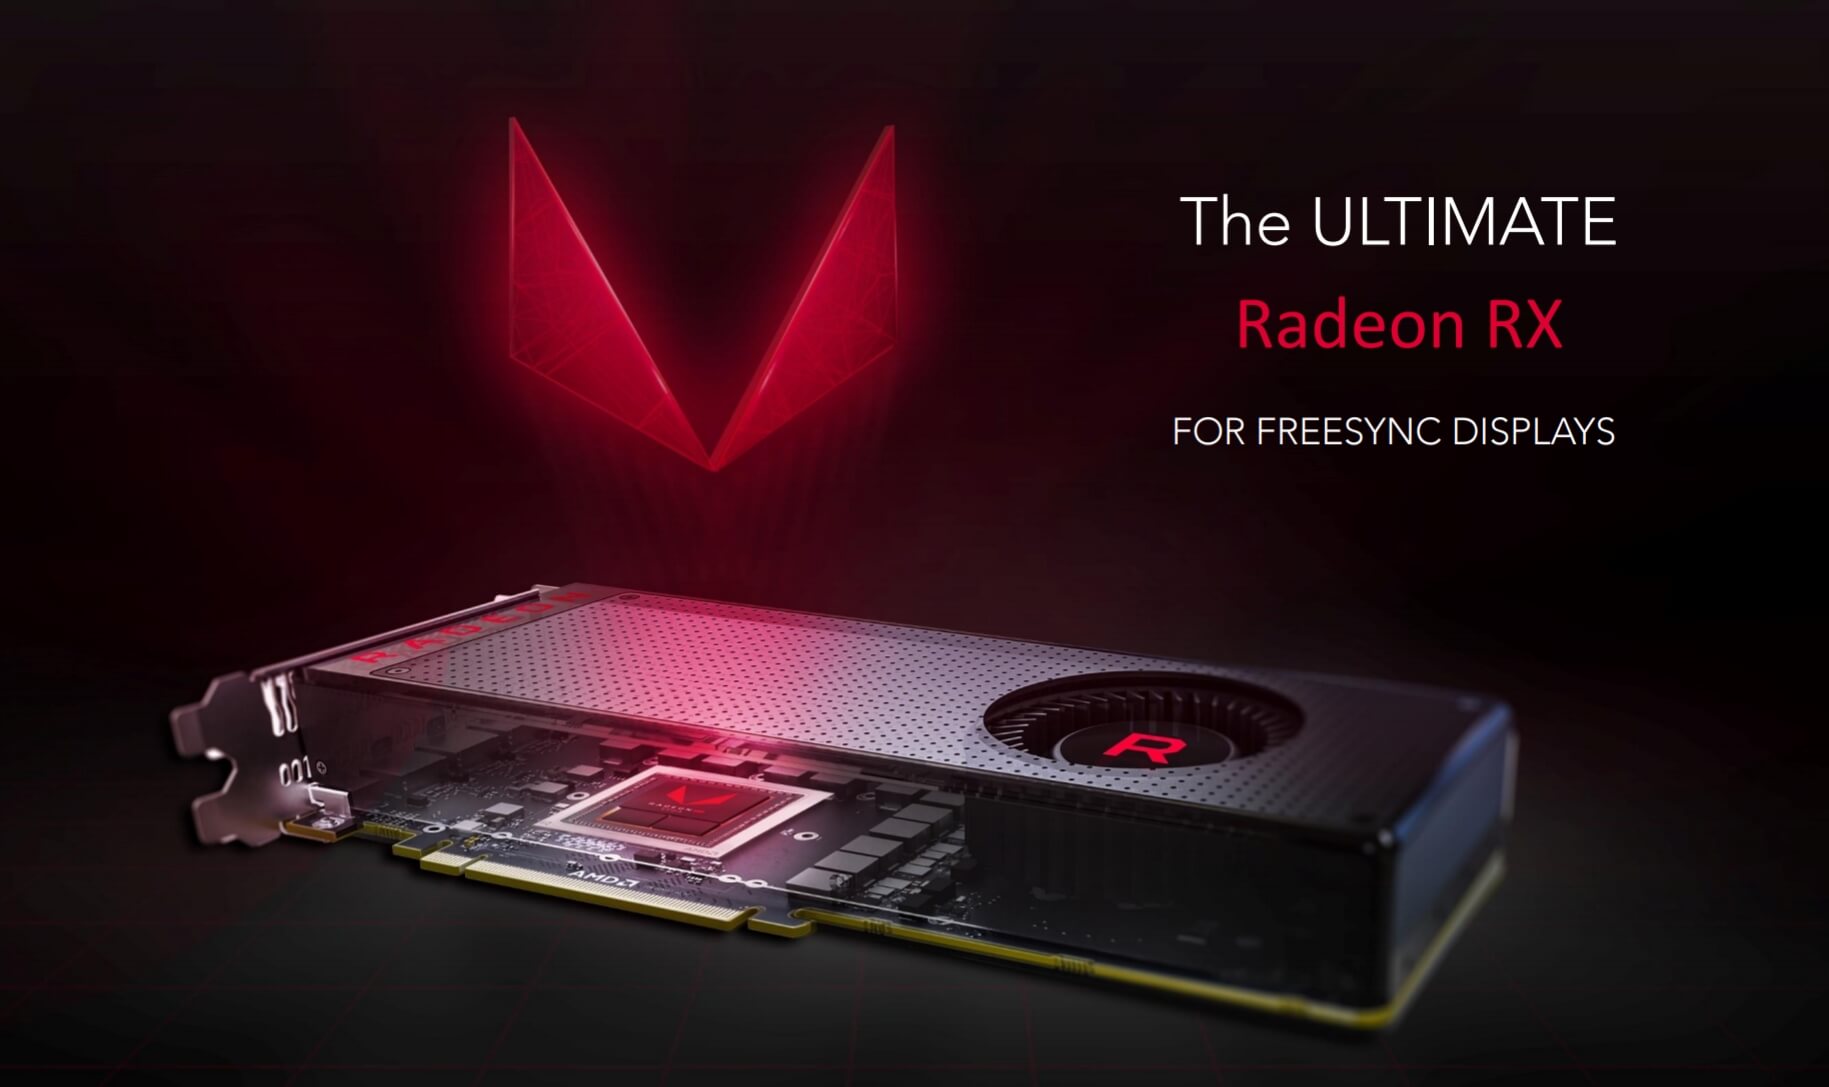 AMD Radeon RX Vega ekran kartları tanıtıldı: İşte tüm detaylar